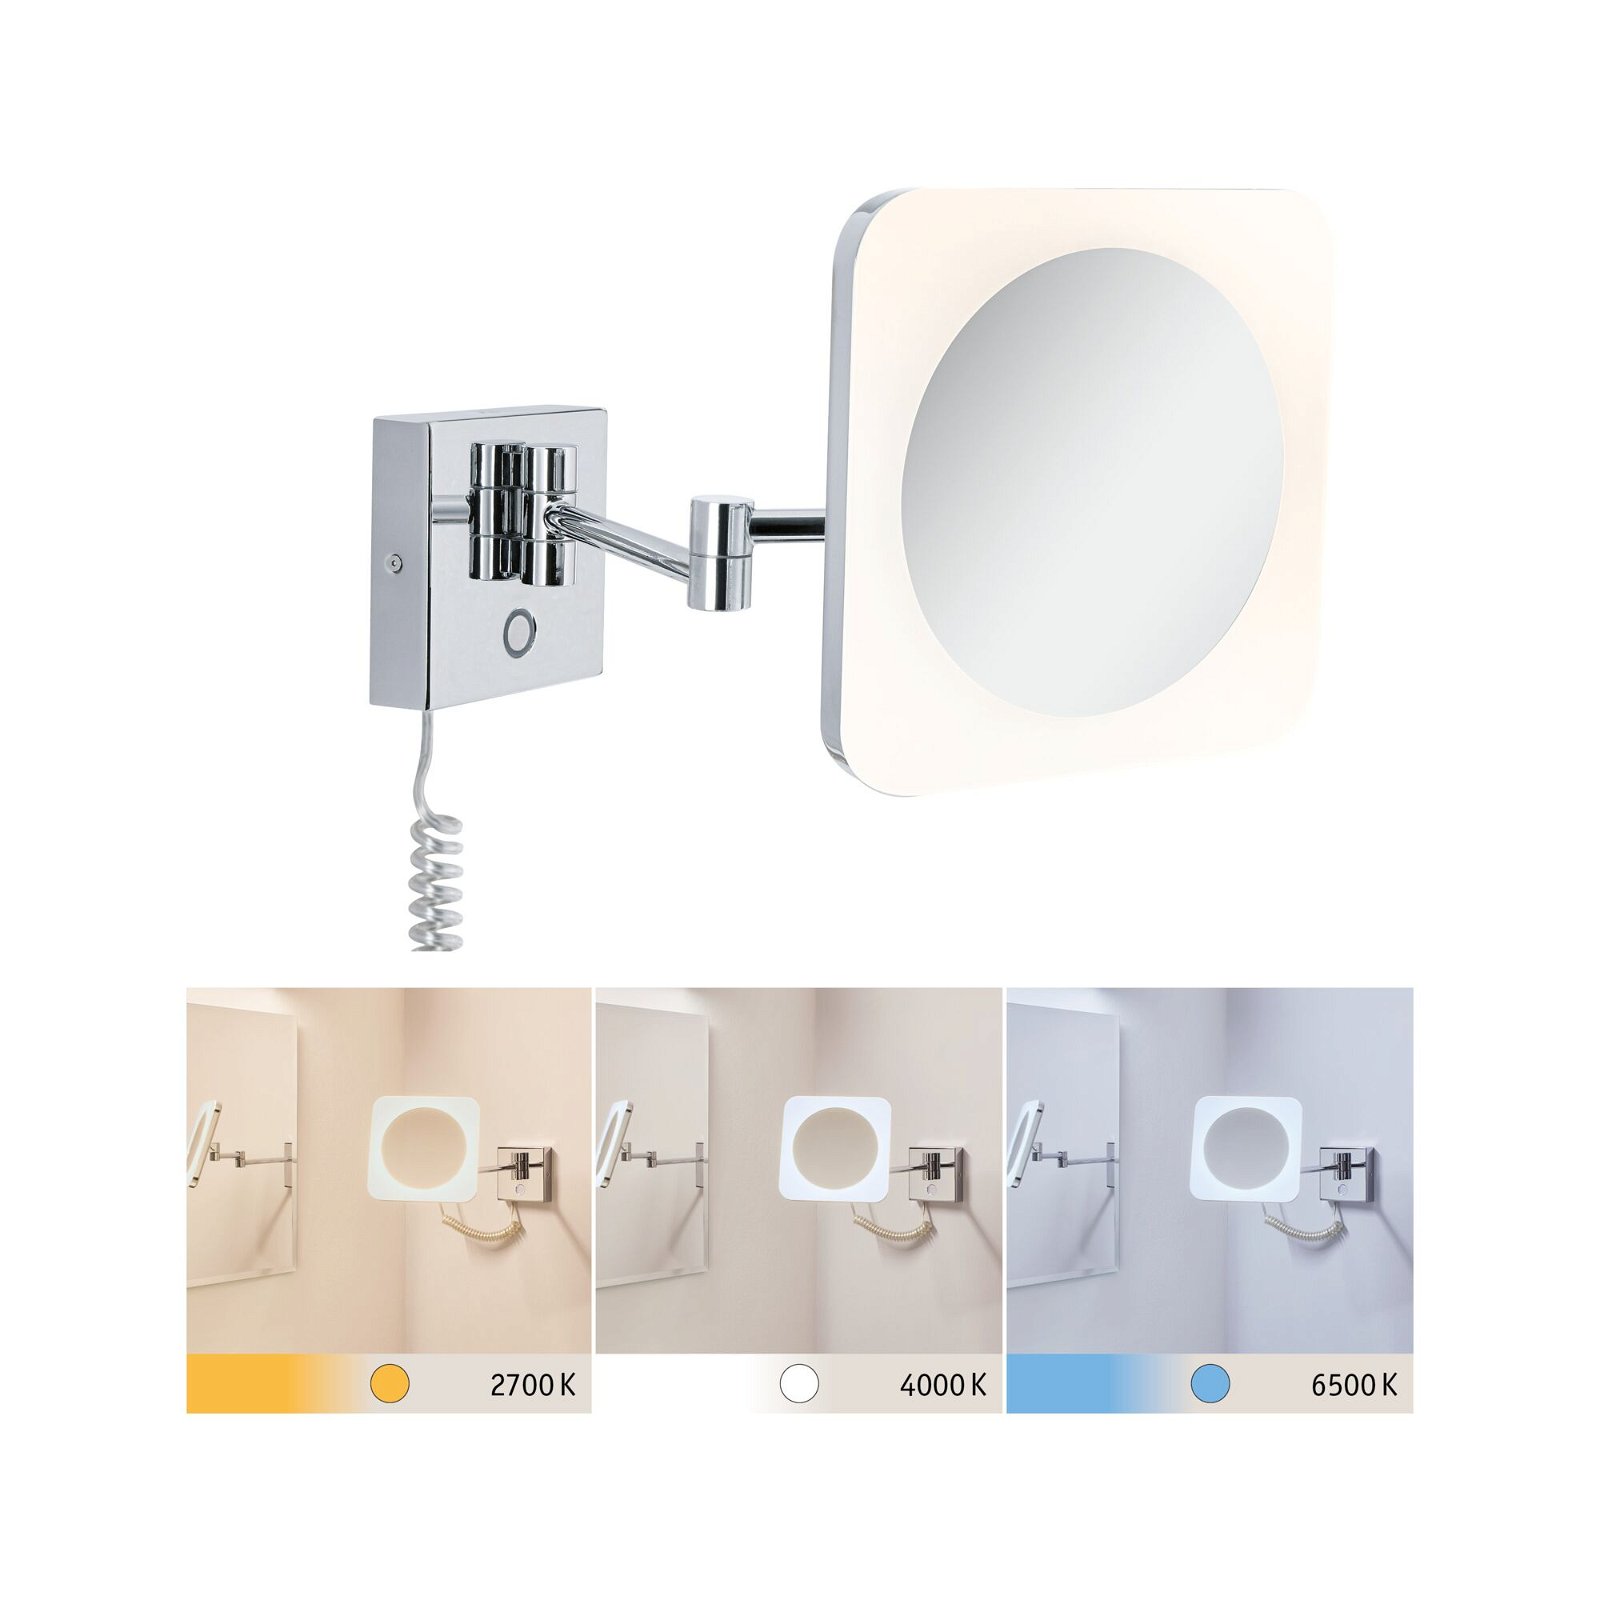 3,3W LED Kosmetikspiegel Switch 60lm 230V Chrom/Weiß/Spiegel IP44 Jora White